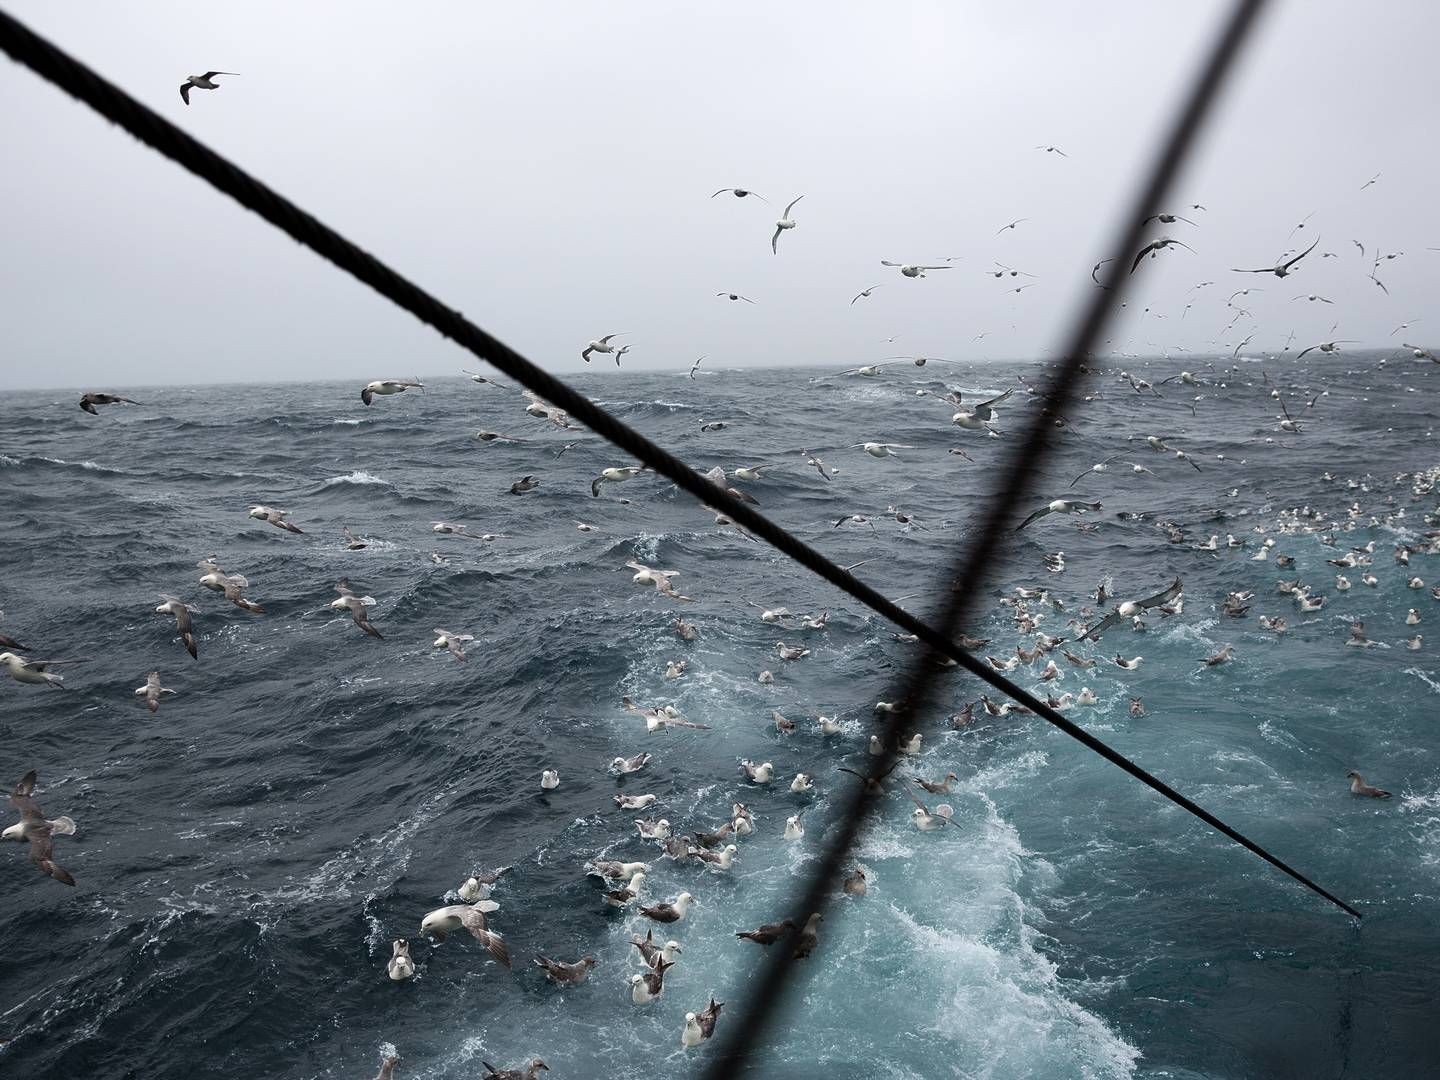 Hårdt russisk fiskeri i Østersøen "underminerer" mulighederne for at genopbygge de pressede bestande, advarer flere EU-lande. De kræver handling. i(ARKIV / ILLUSTRATION) | Photo: Per Folkver